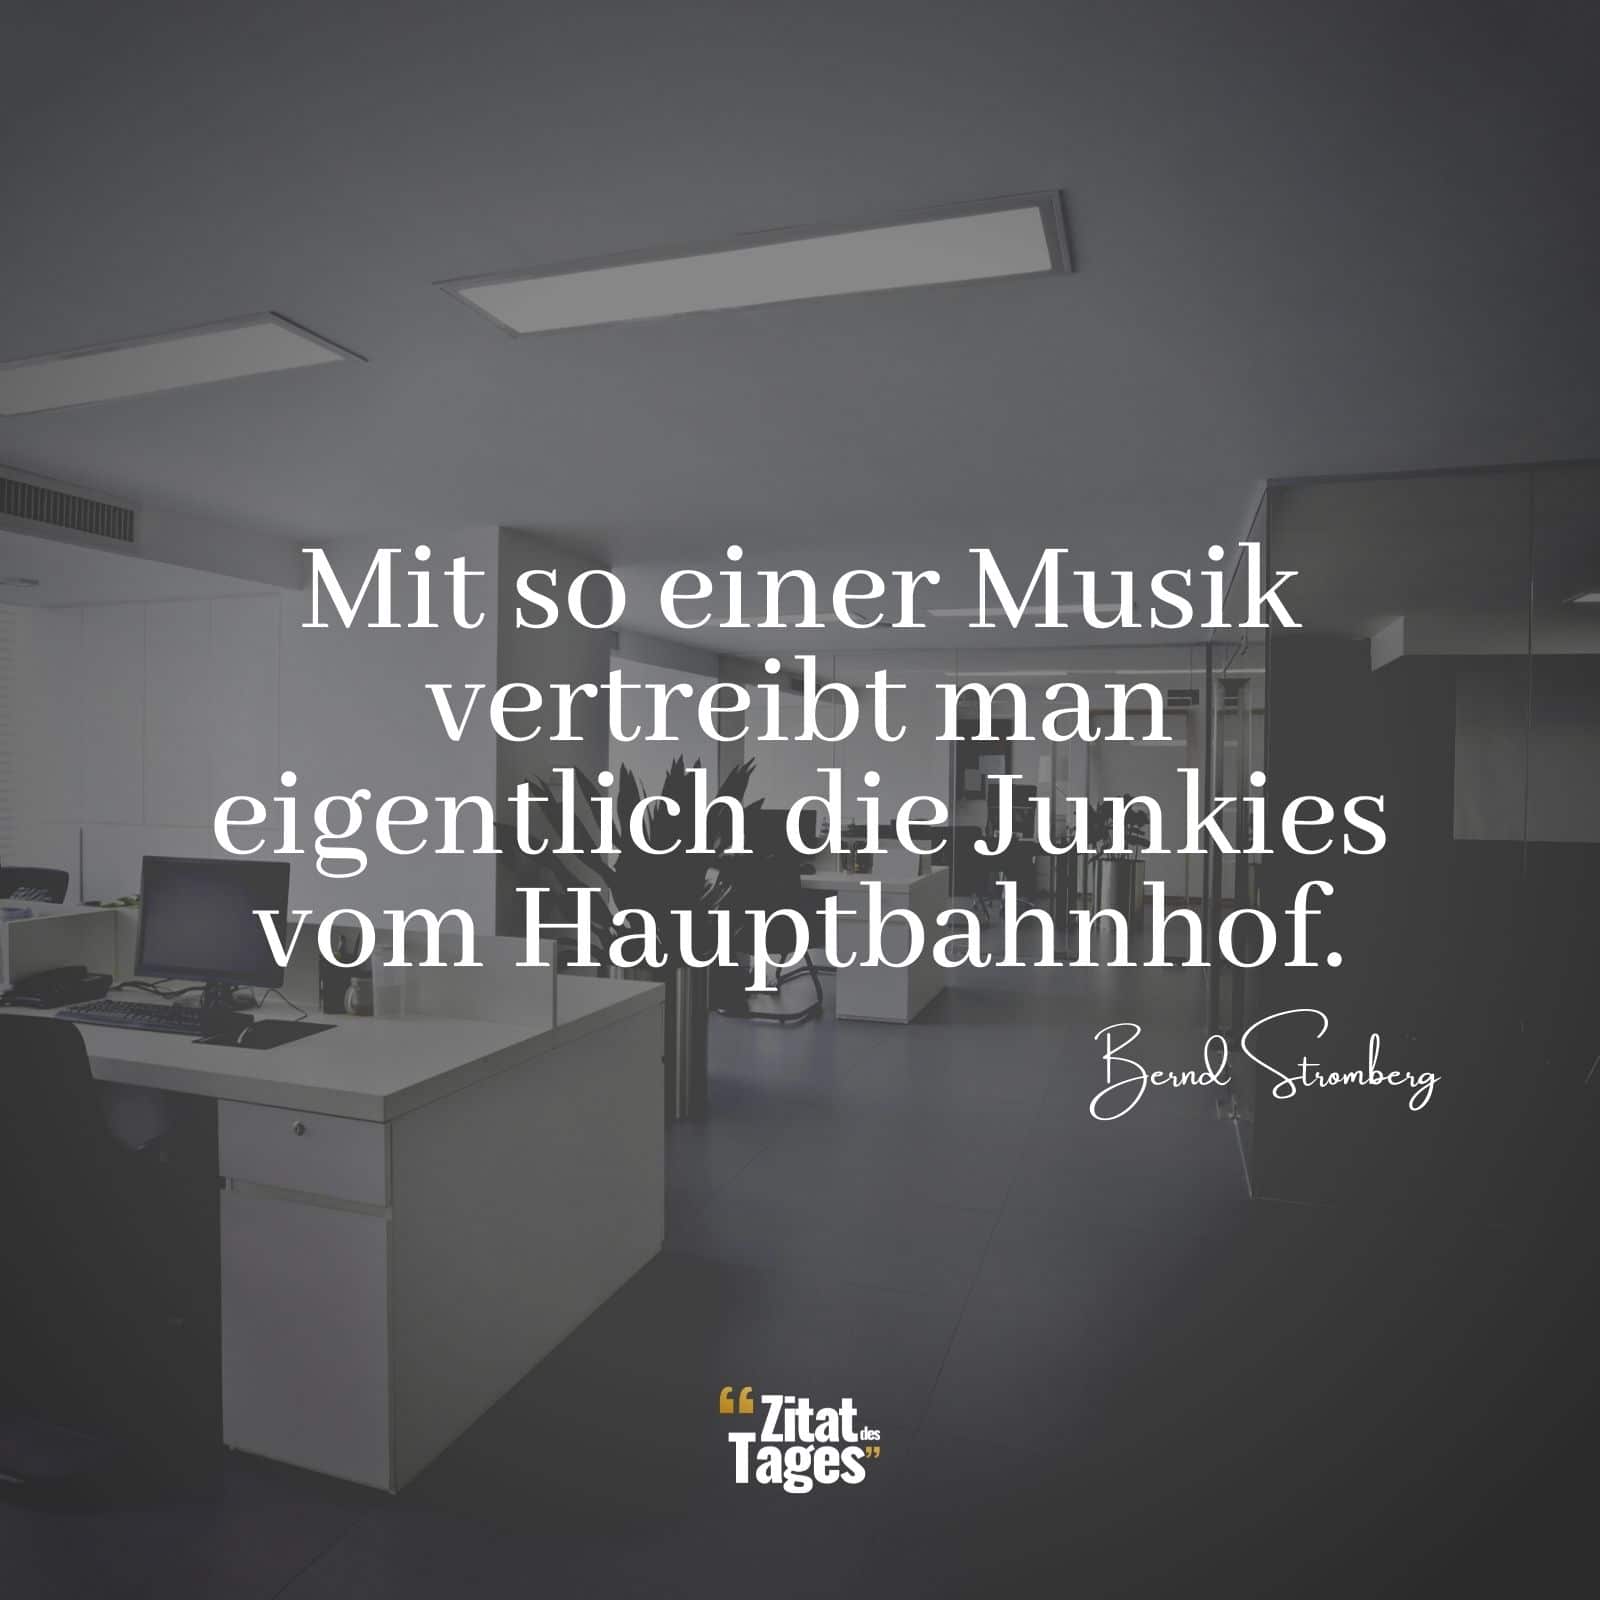 Mit so einer Musik vertreibt man eigentlich die Junkies vom Hauptbahnhof. - Bernd Stromberg